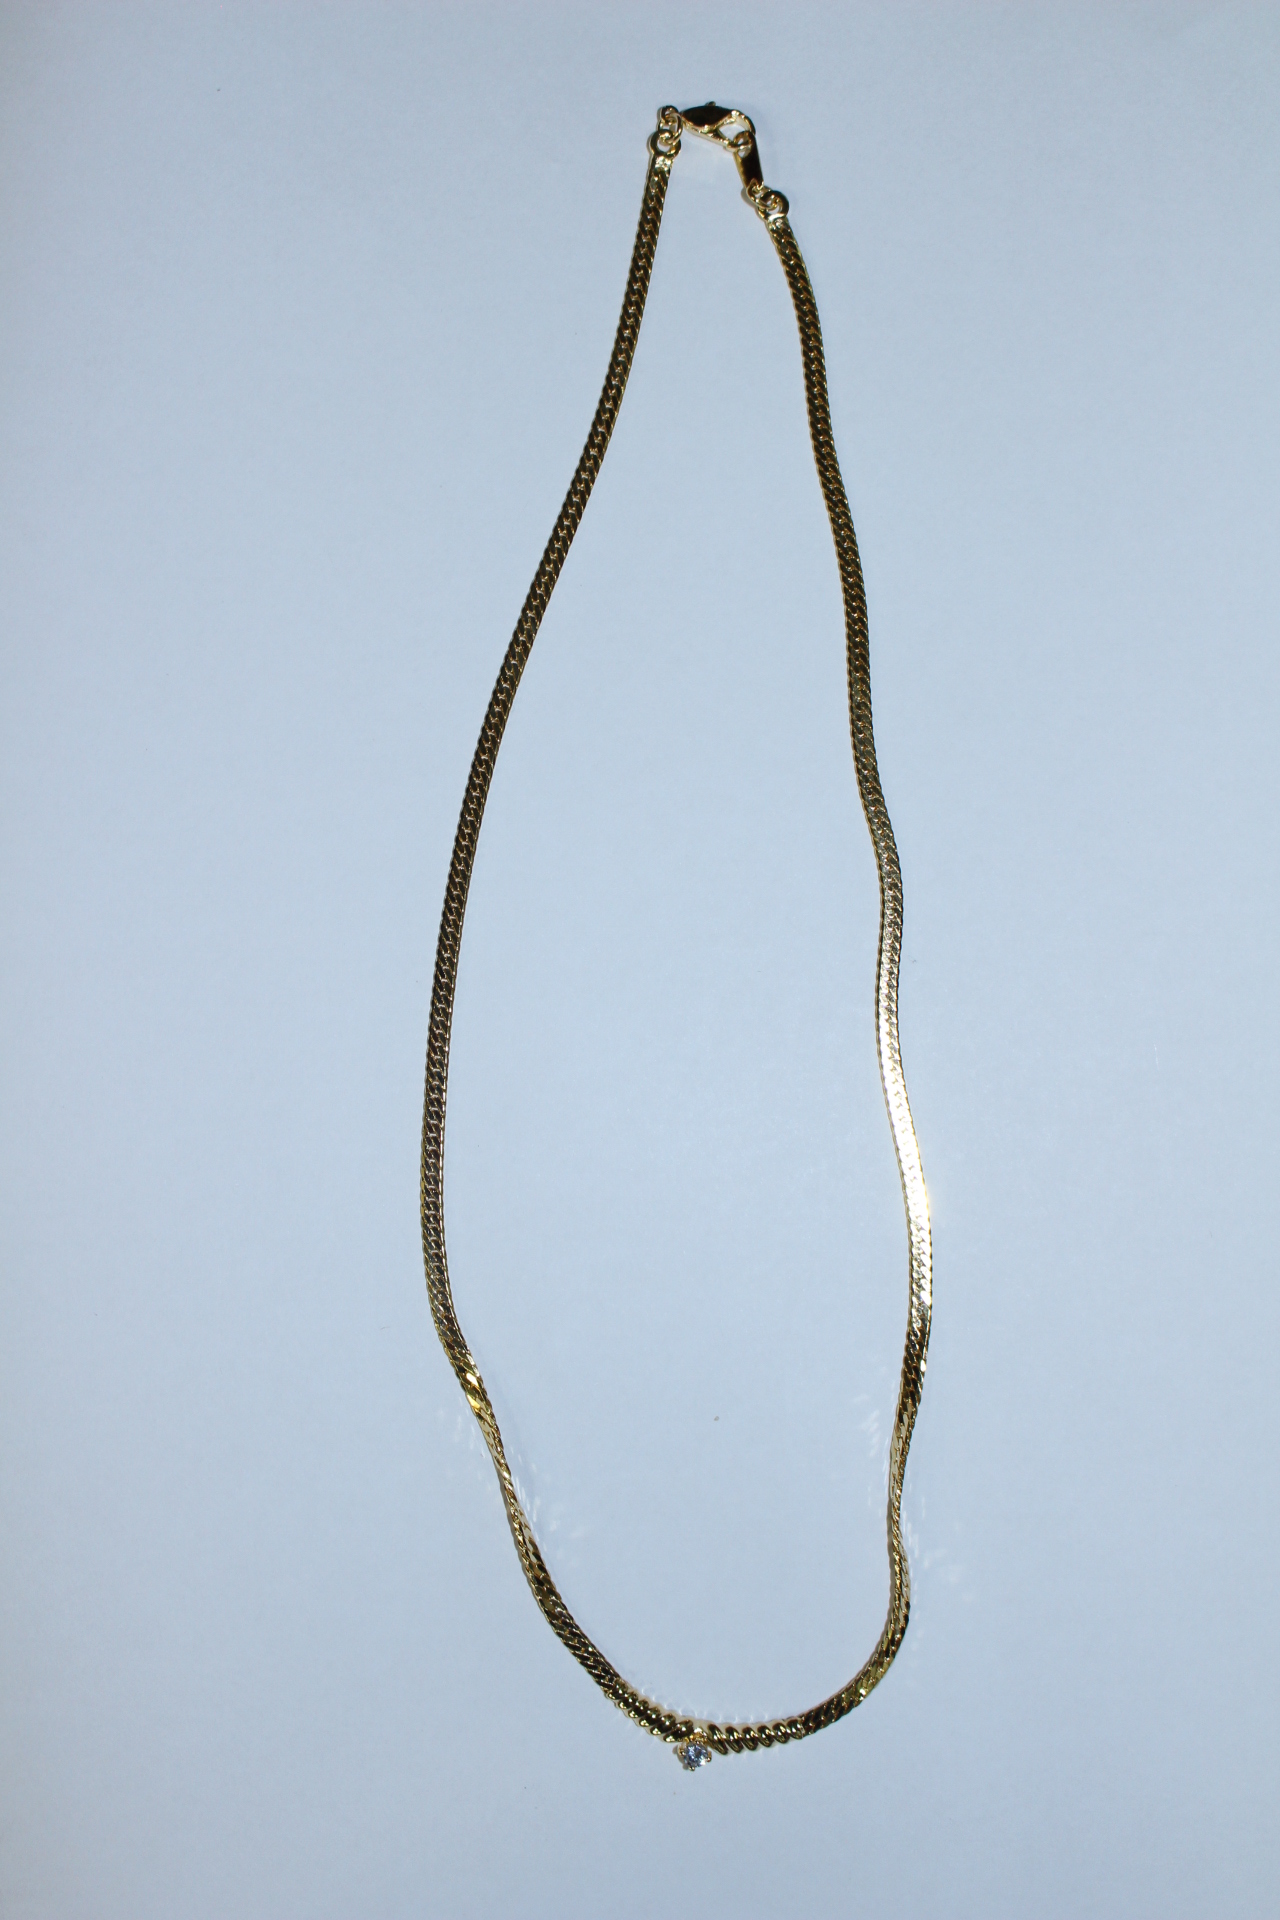 34-청동합금재질에 보석이 장식된 목걸이